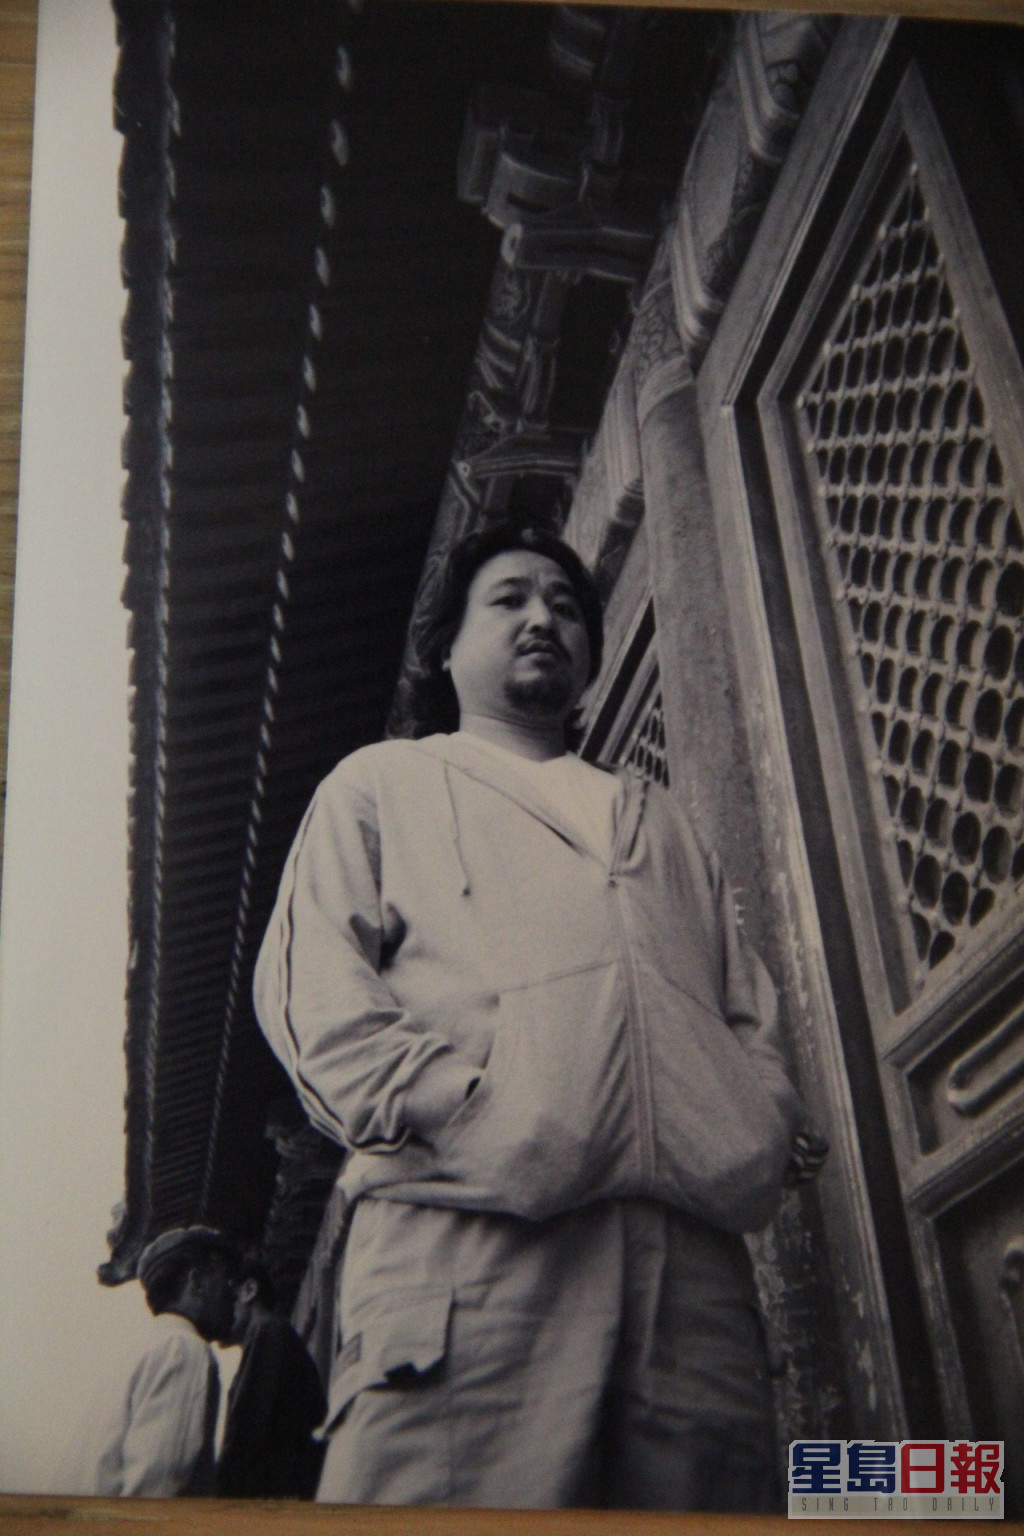 古明华早年在北京拍摄剧集《谈谈情练练武》。